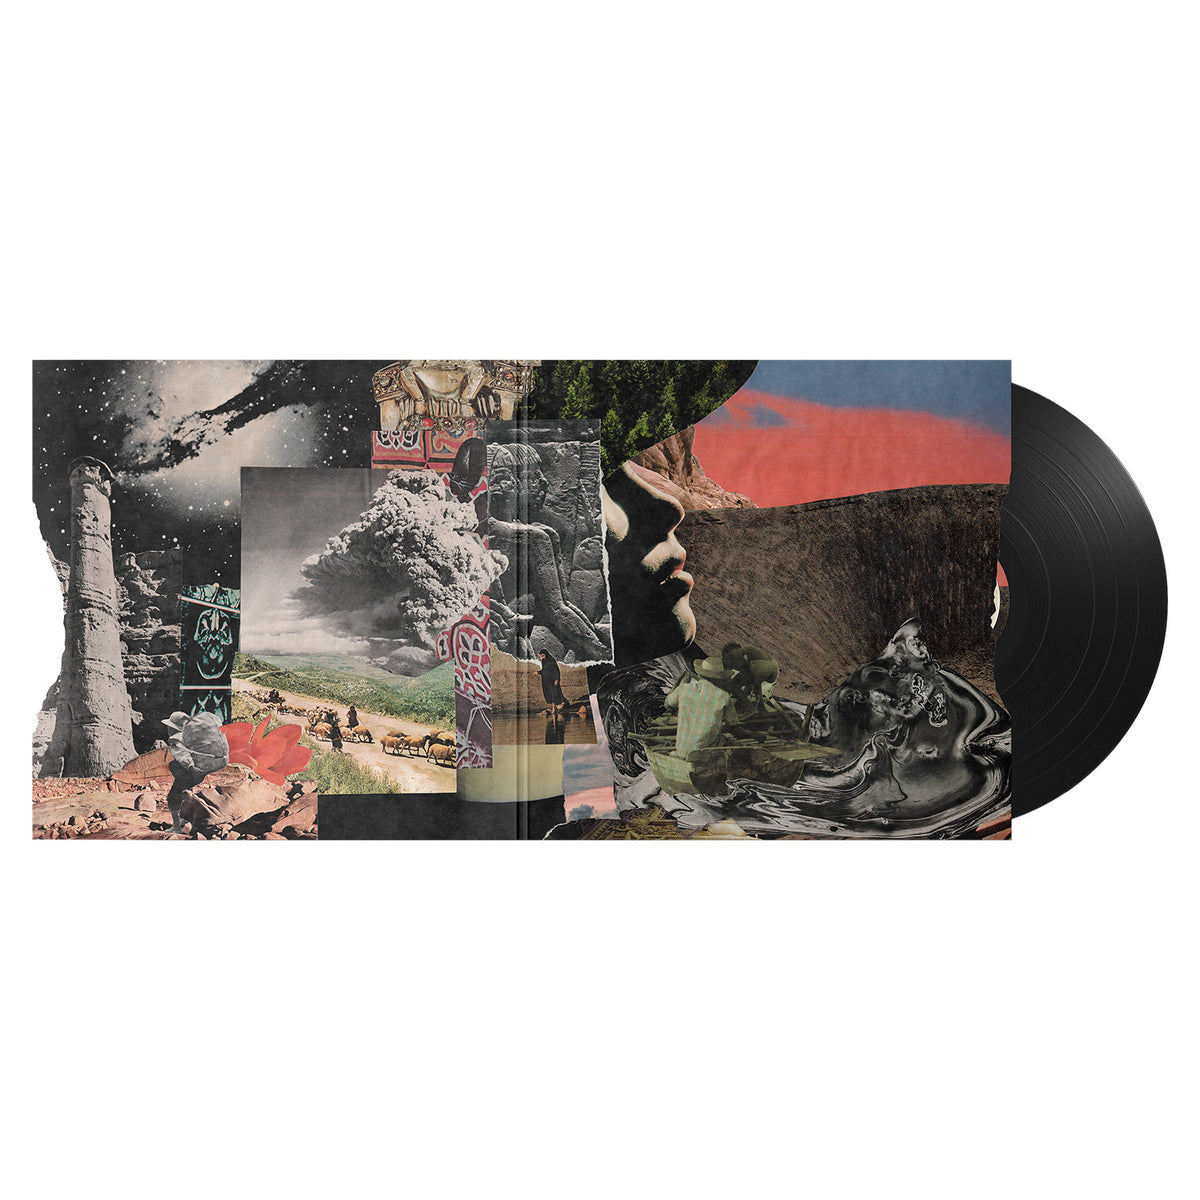 DAVE MATTHEWS BAND - Walk Around The Moon - LP - Gatefold Vinyl